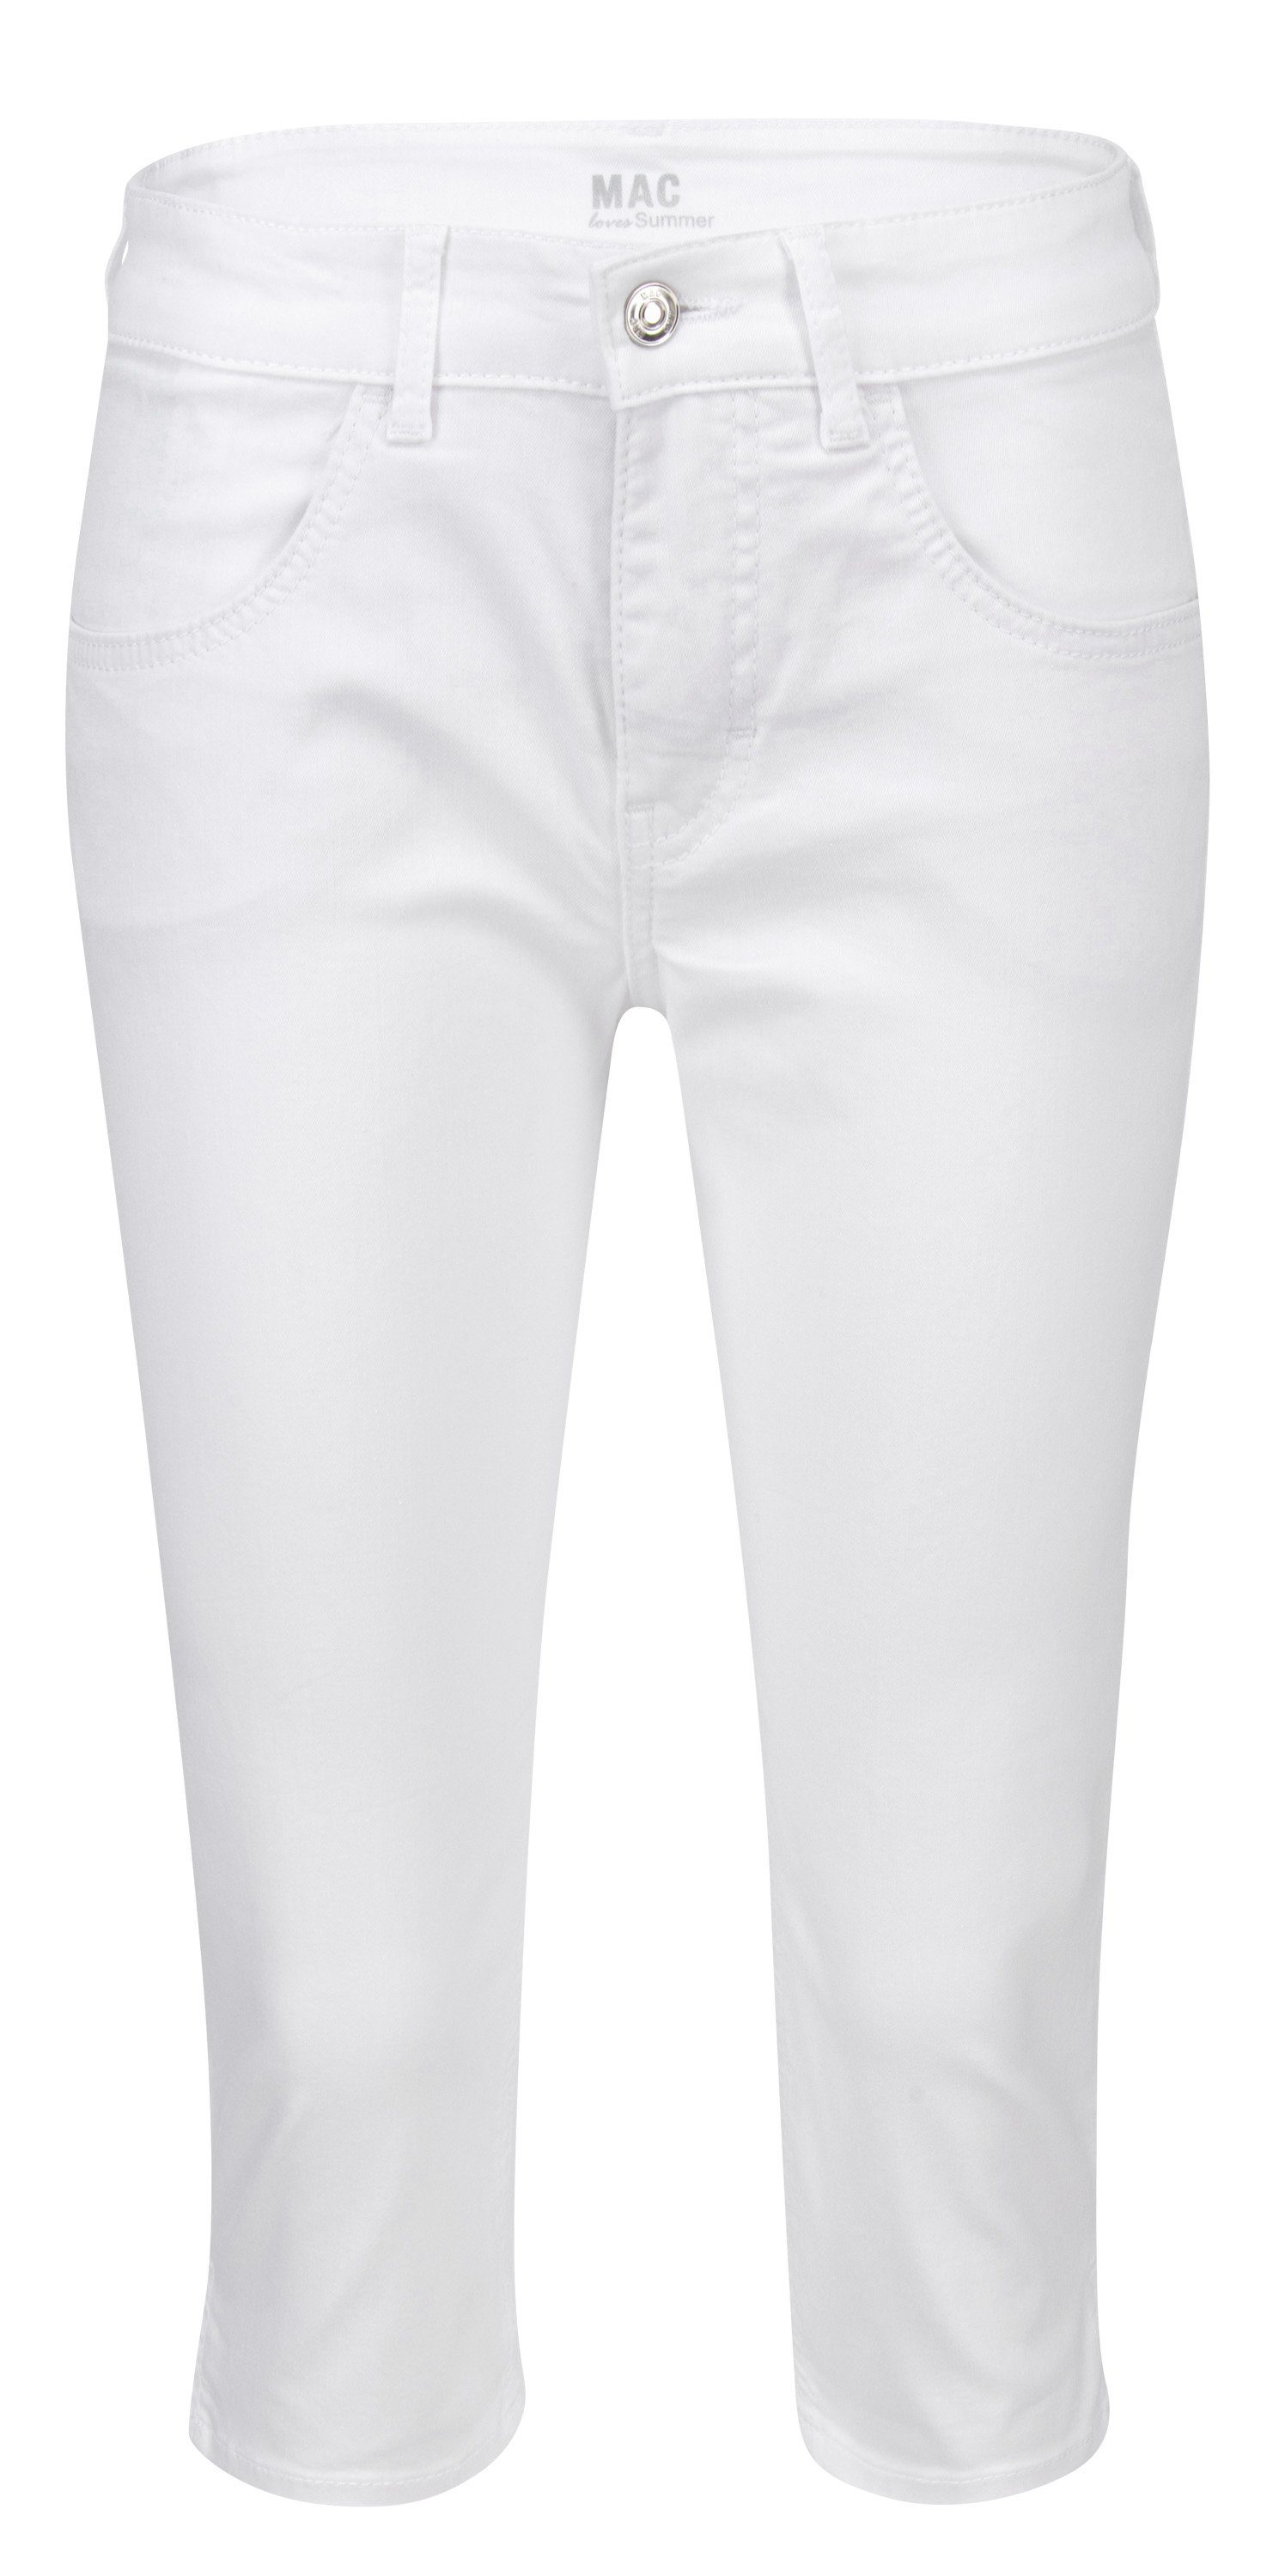 [Vertrauen zuerst, Qualität zuerst] MAC Stretch-Jeans white 5917-90-0394 CAPRI denim D010 MAC